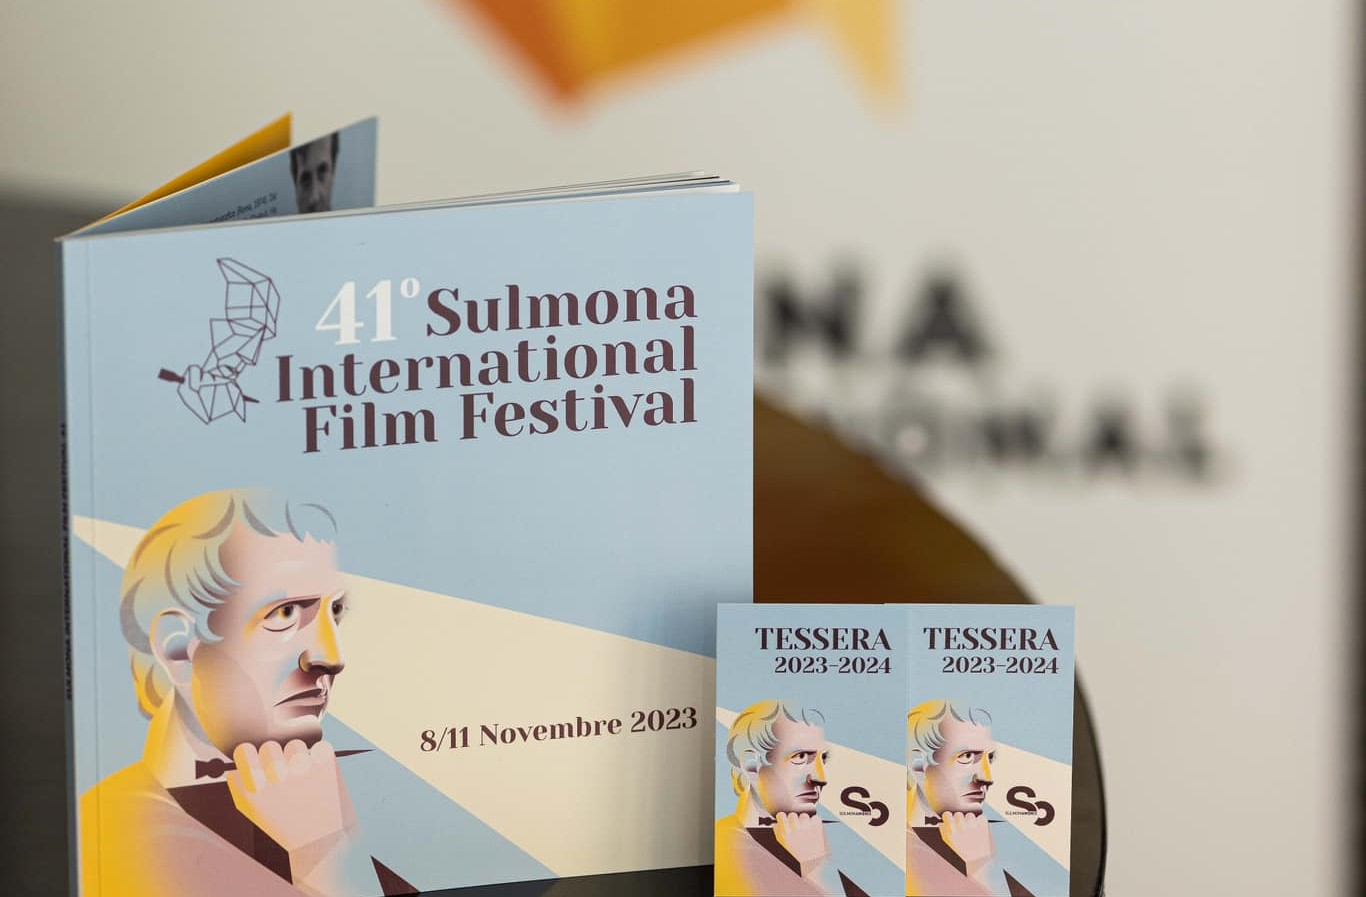 Sulmona International Film Festival: al via la 41esima edizione